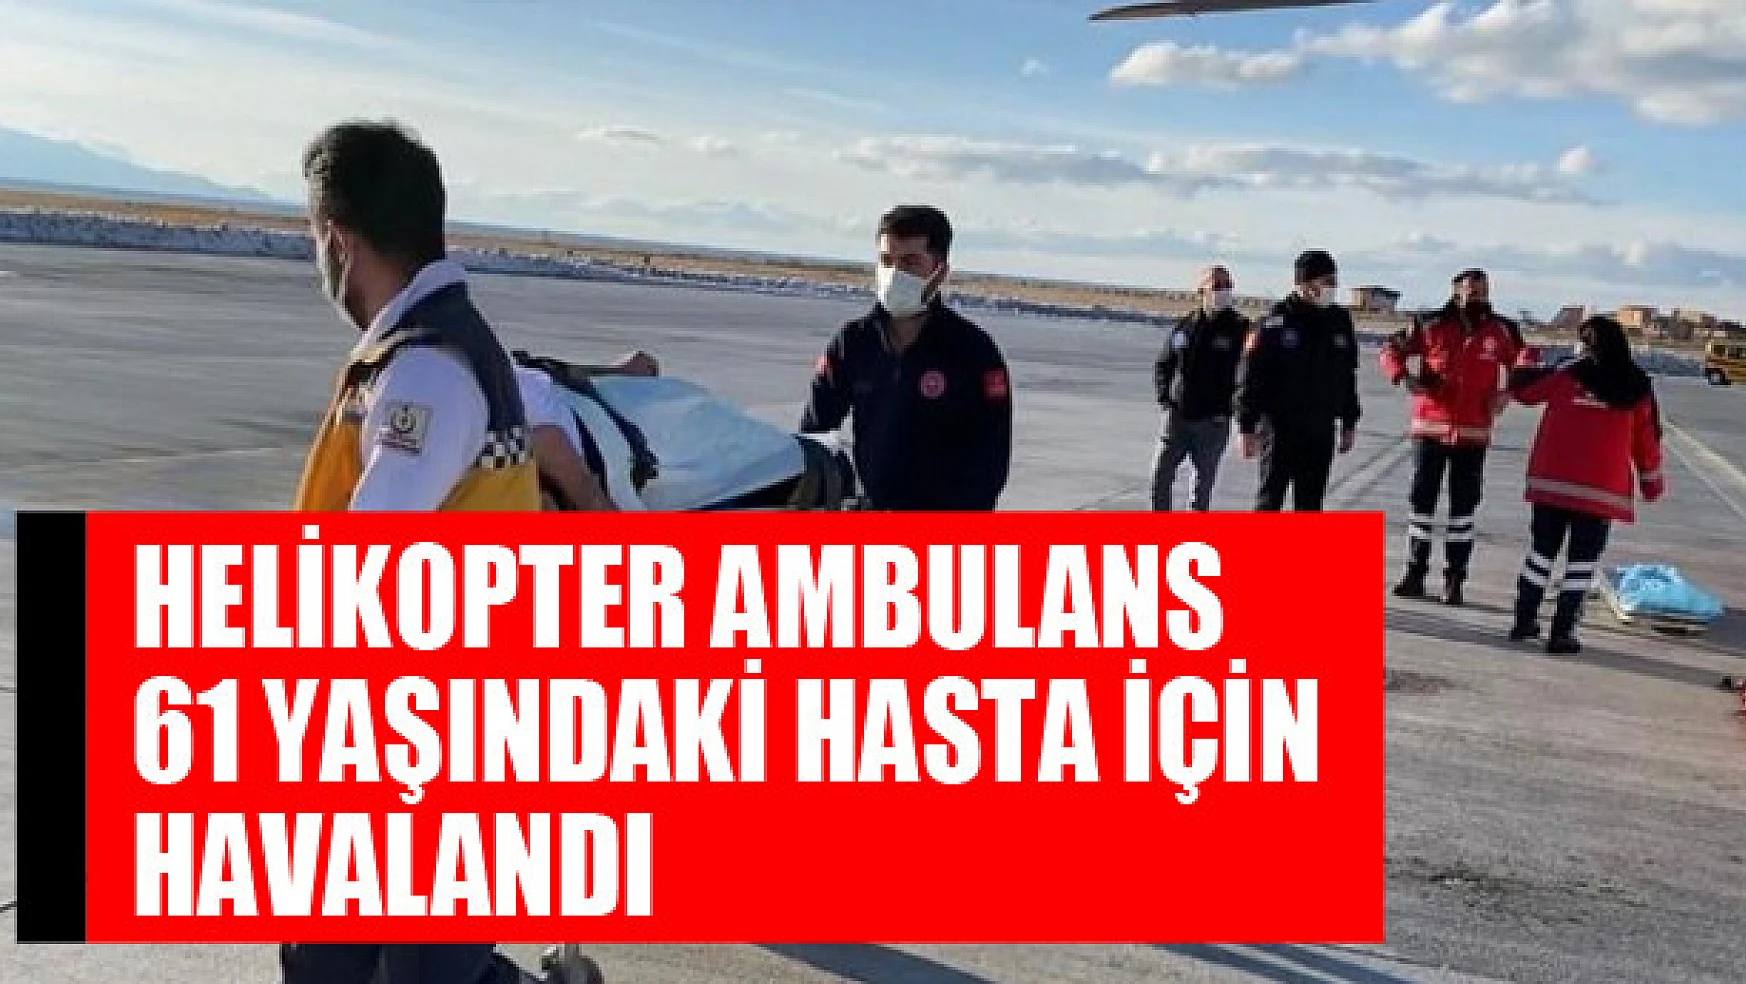 Helikopter ambulans 61 yaşındaki hasta için havalandı